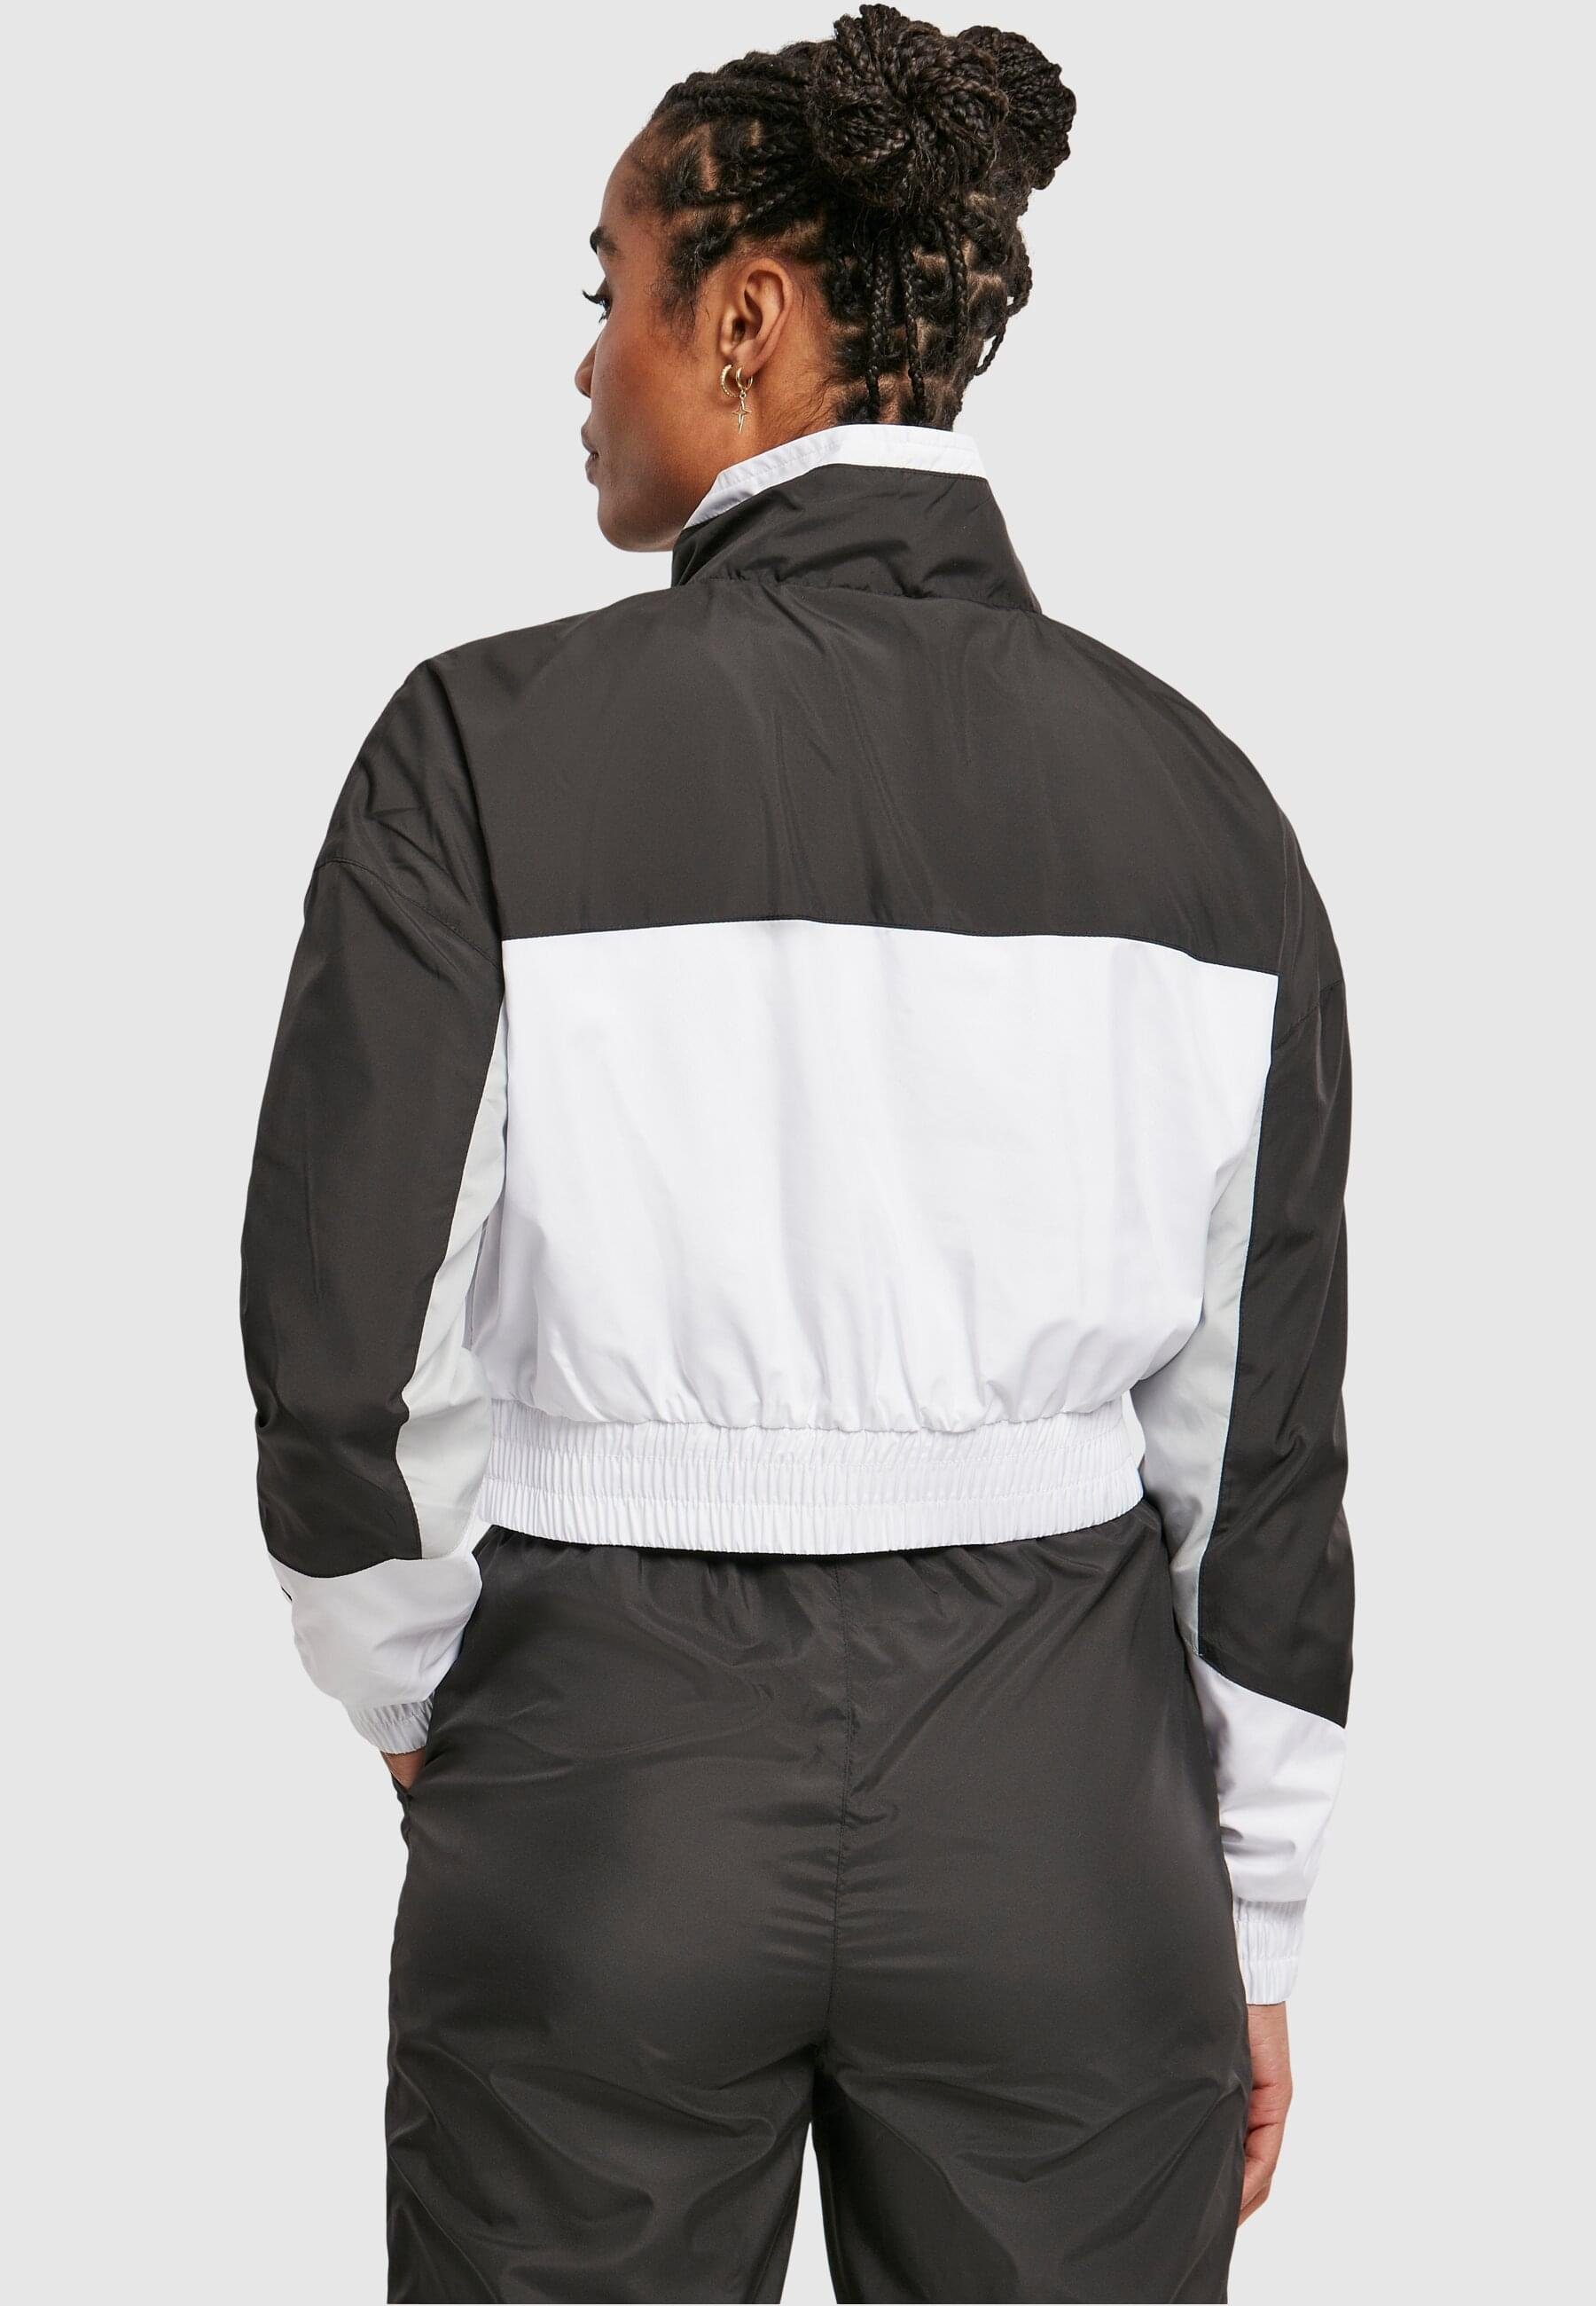 Starter Black Jacket Pull (1-St) Over black/white Colorblock Label Ladies Damen Starter Outdoorjacke